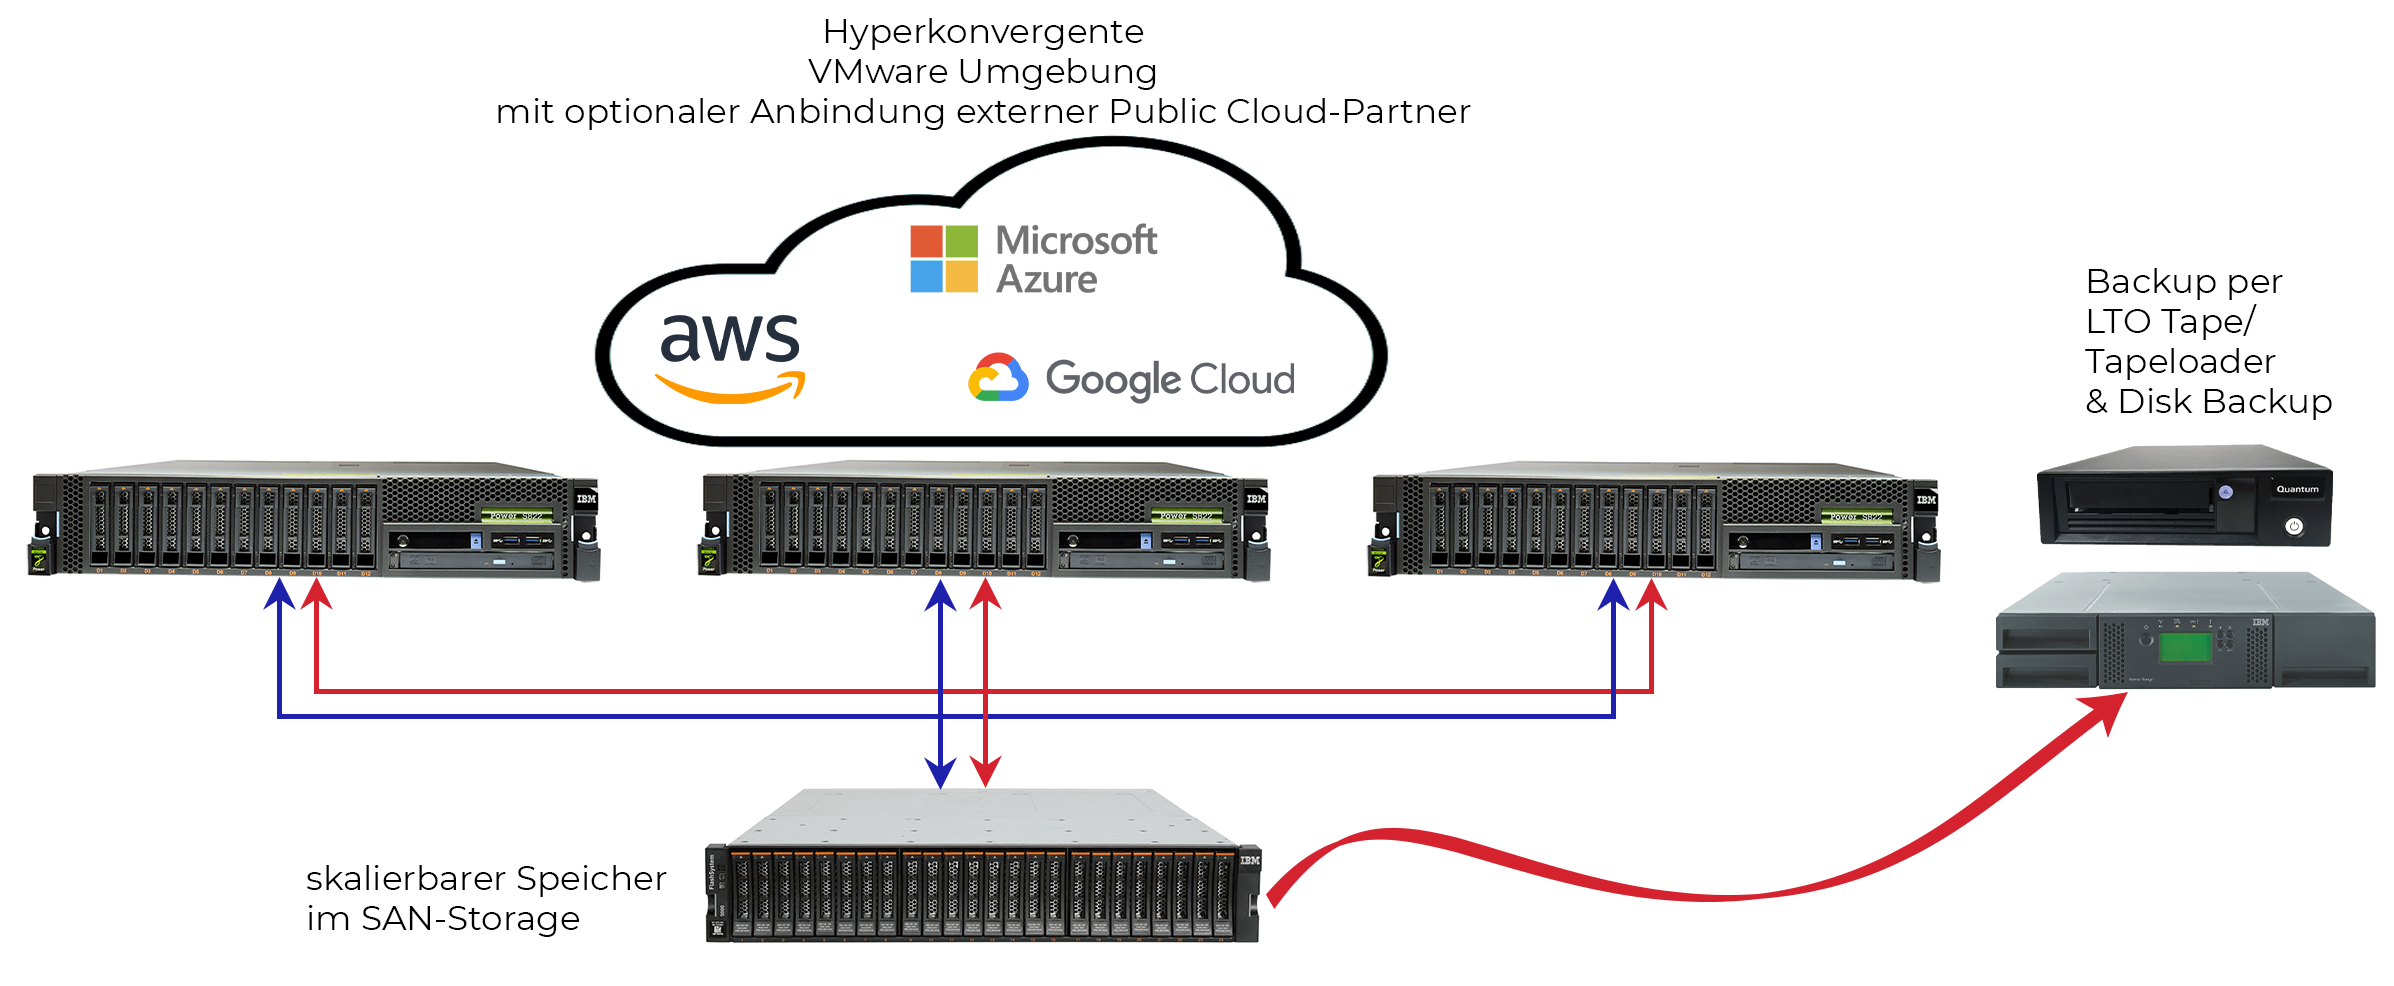 Private Cloud - Diagramm für eine hyperkonvergente VMware Umgebung